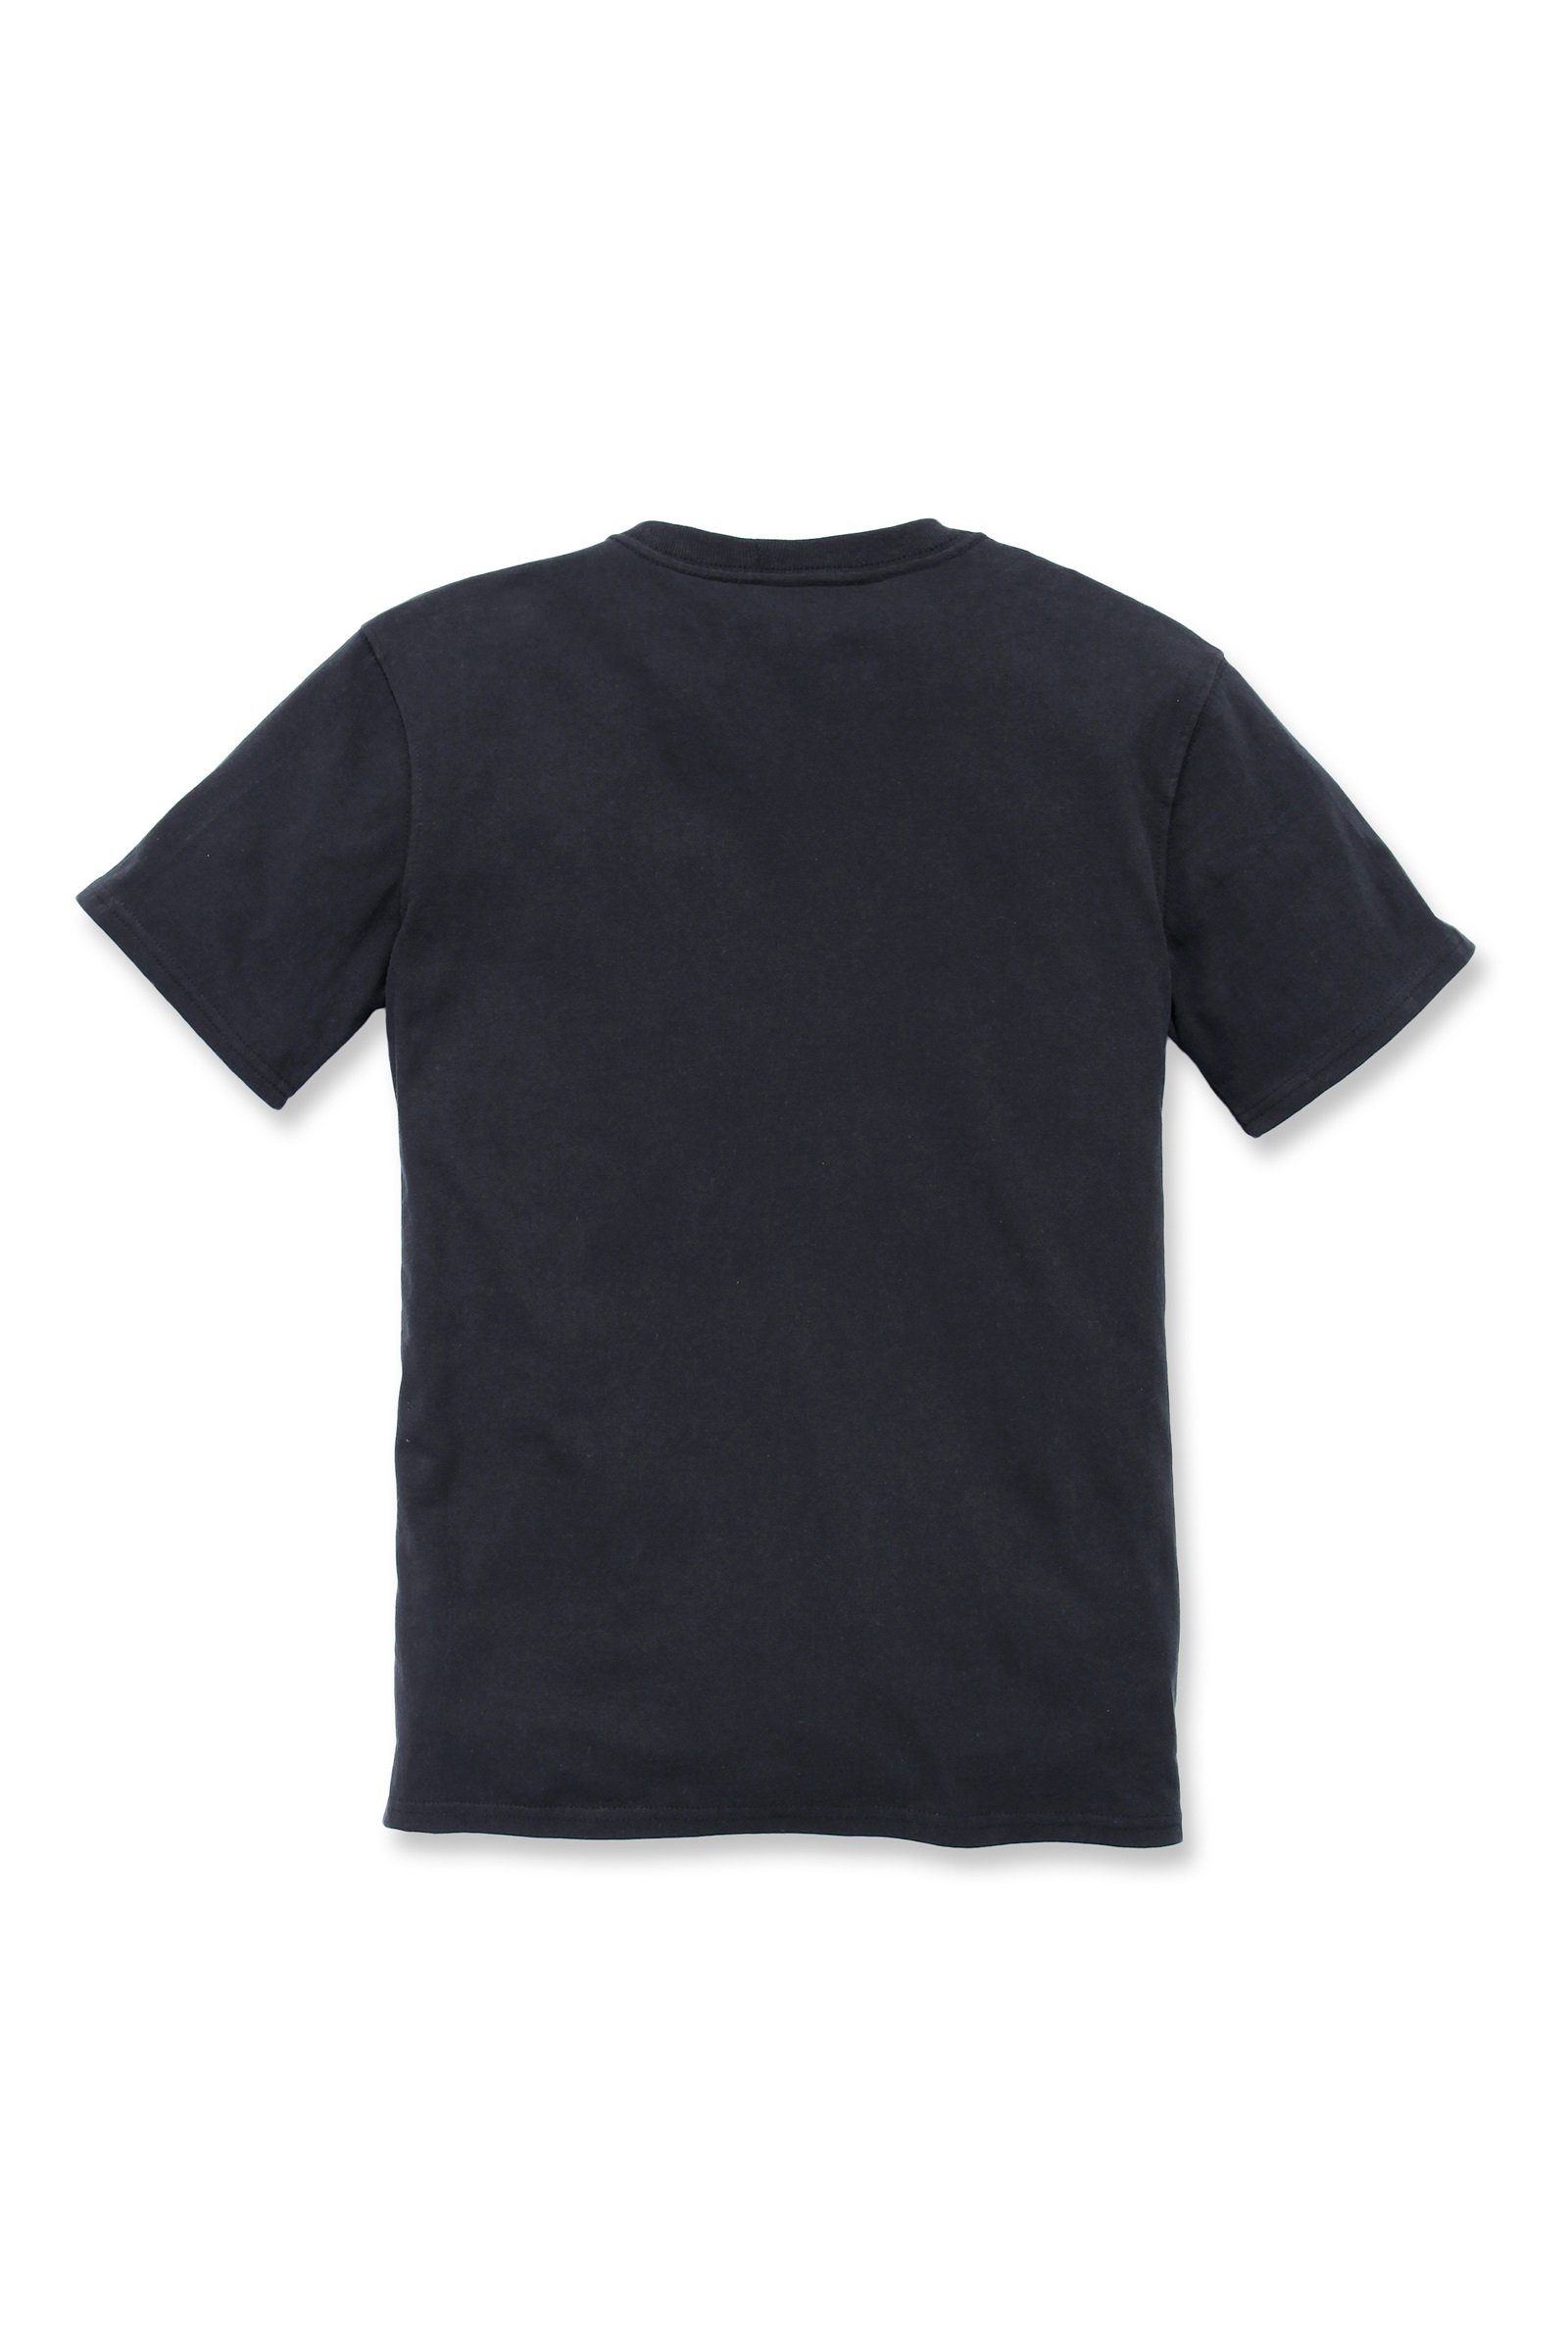 Carhartt T-Shirt Carhartt Adult Heavyweight T-Shirt Fit Loose black Damen Short-Sleeve Pocket